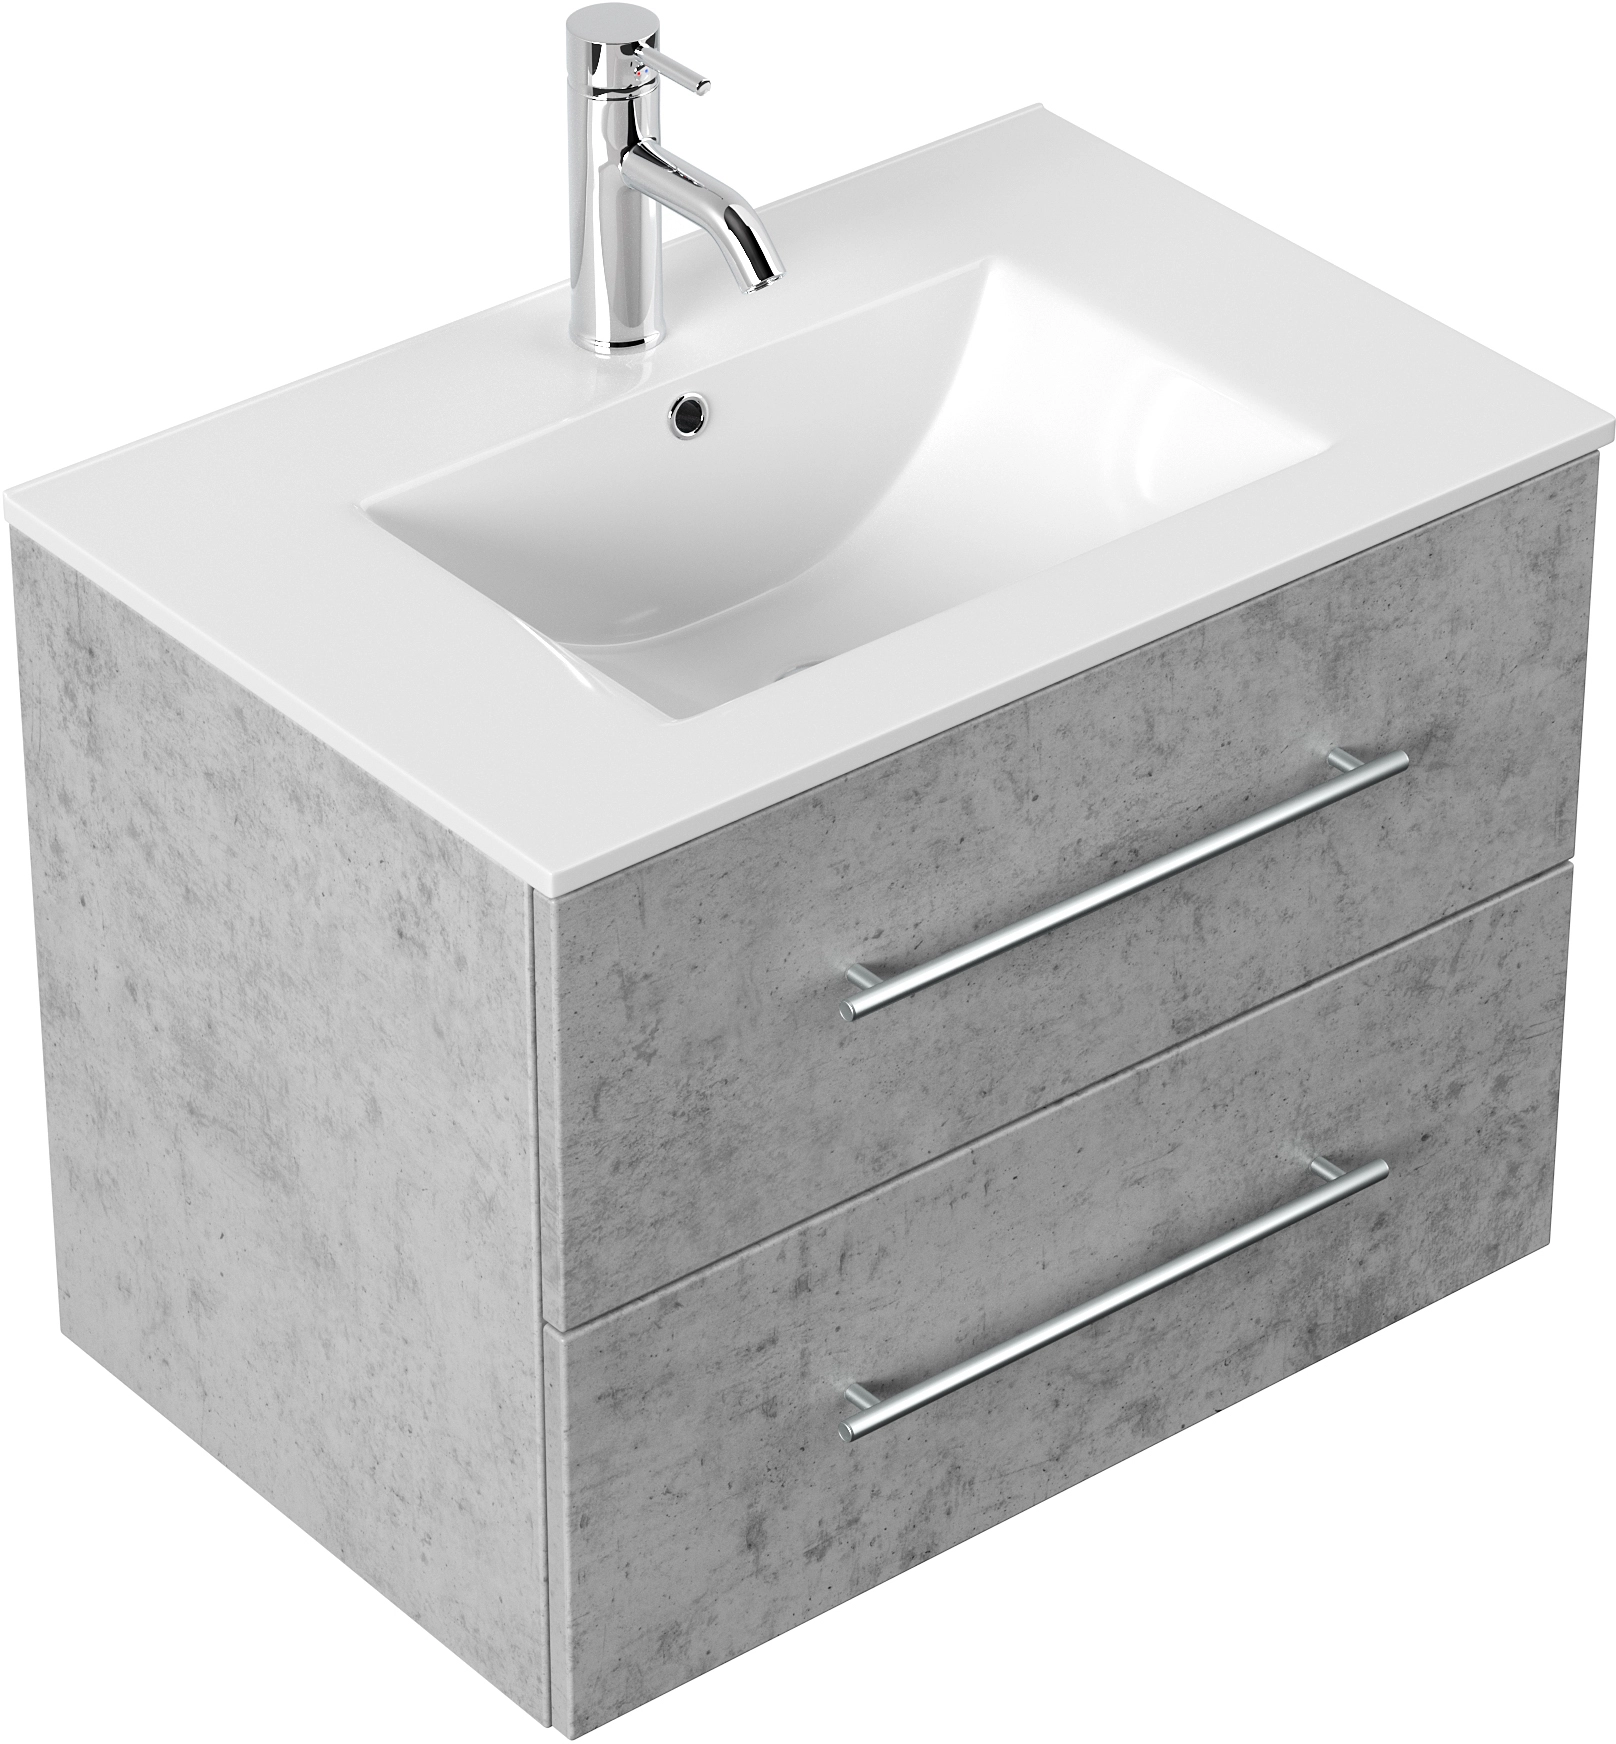 Bad, Waschplatz aus Granit mit Wasch … – Bild kaufen – 10097665